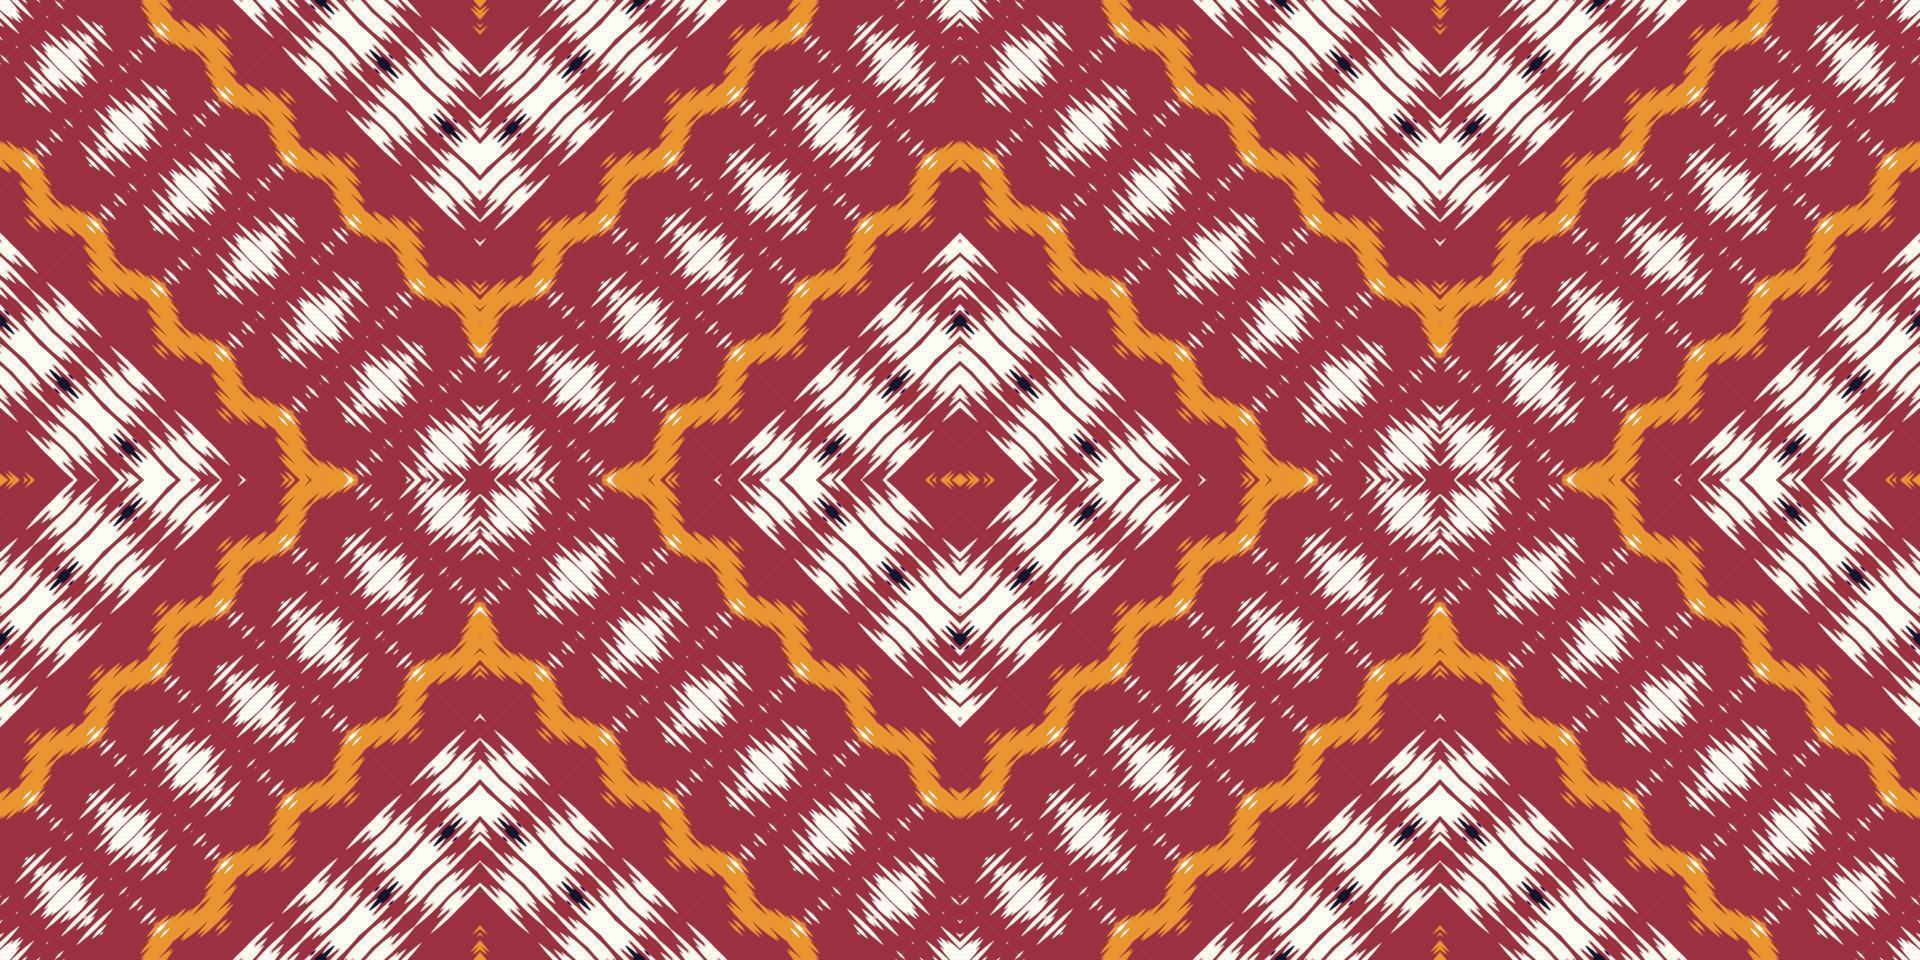 ikkat o ikat damasco batik textil diseño vectorial digital de patrones sin fisuras para imprimir saree kurti borneo borde de tela símbolos de pincel muestras con estilo vector